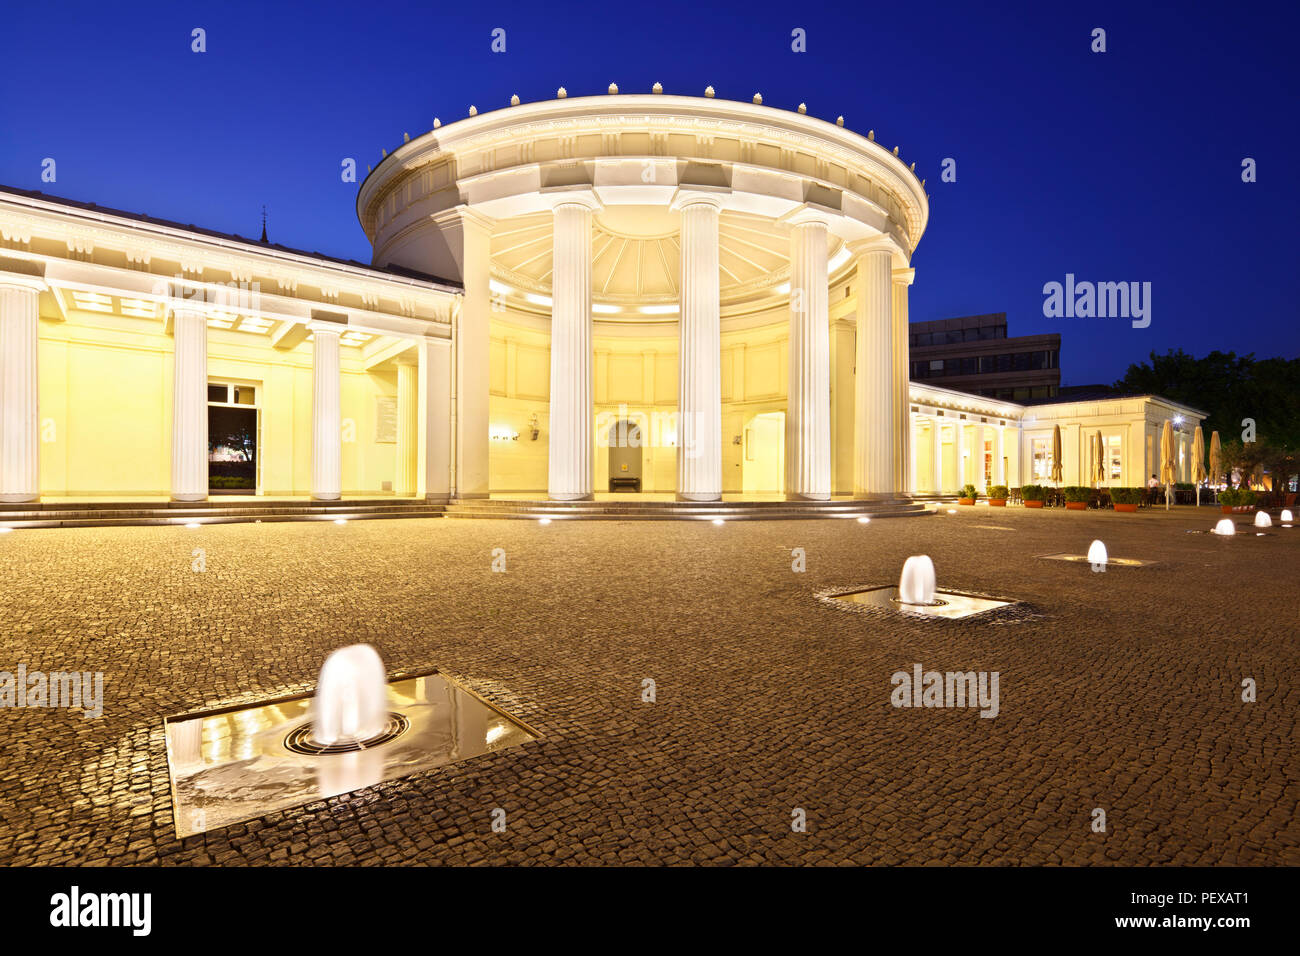 L'Elisenbrunnen célèbre à Aix-la-Chapelle, Allemagne. Nuit illuminée de ciel bleu et quelques fontaines dans l'avant-plan. Banque D'Images